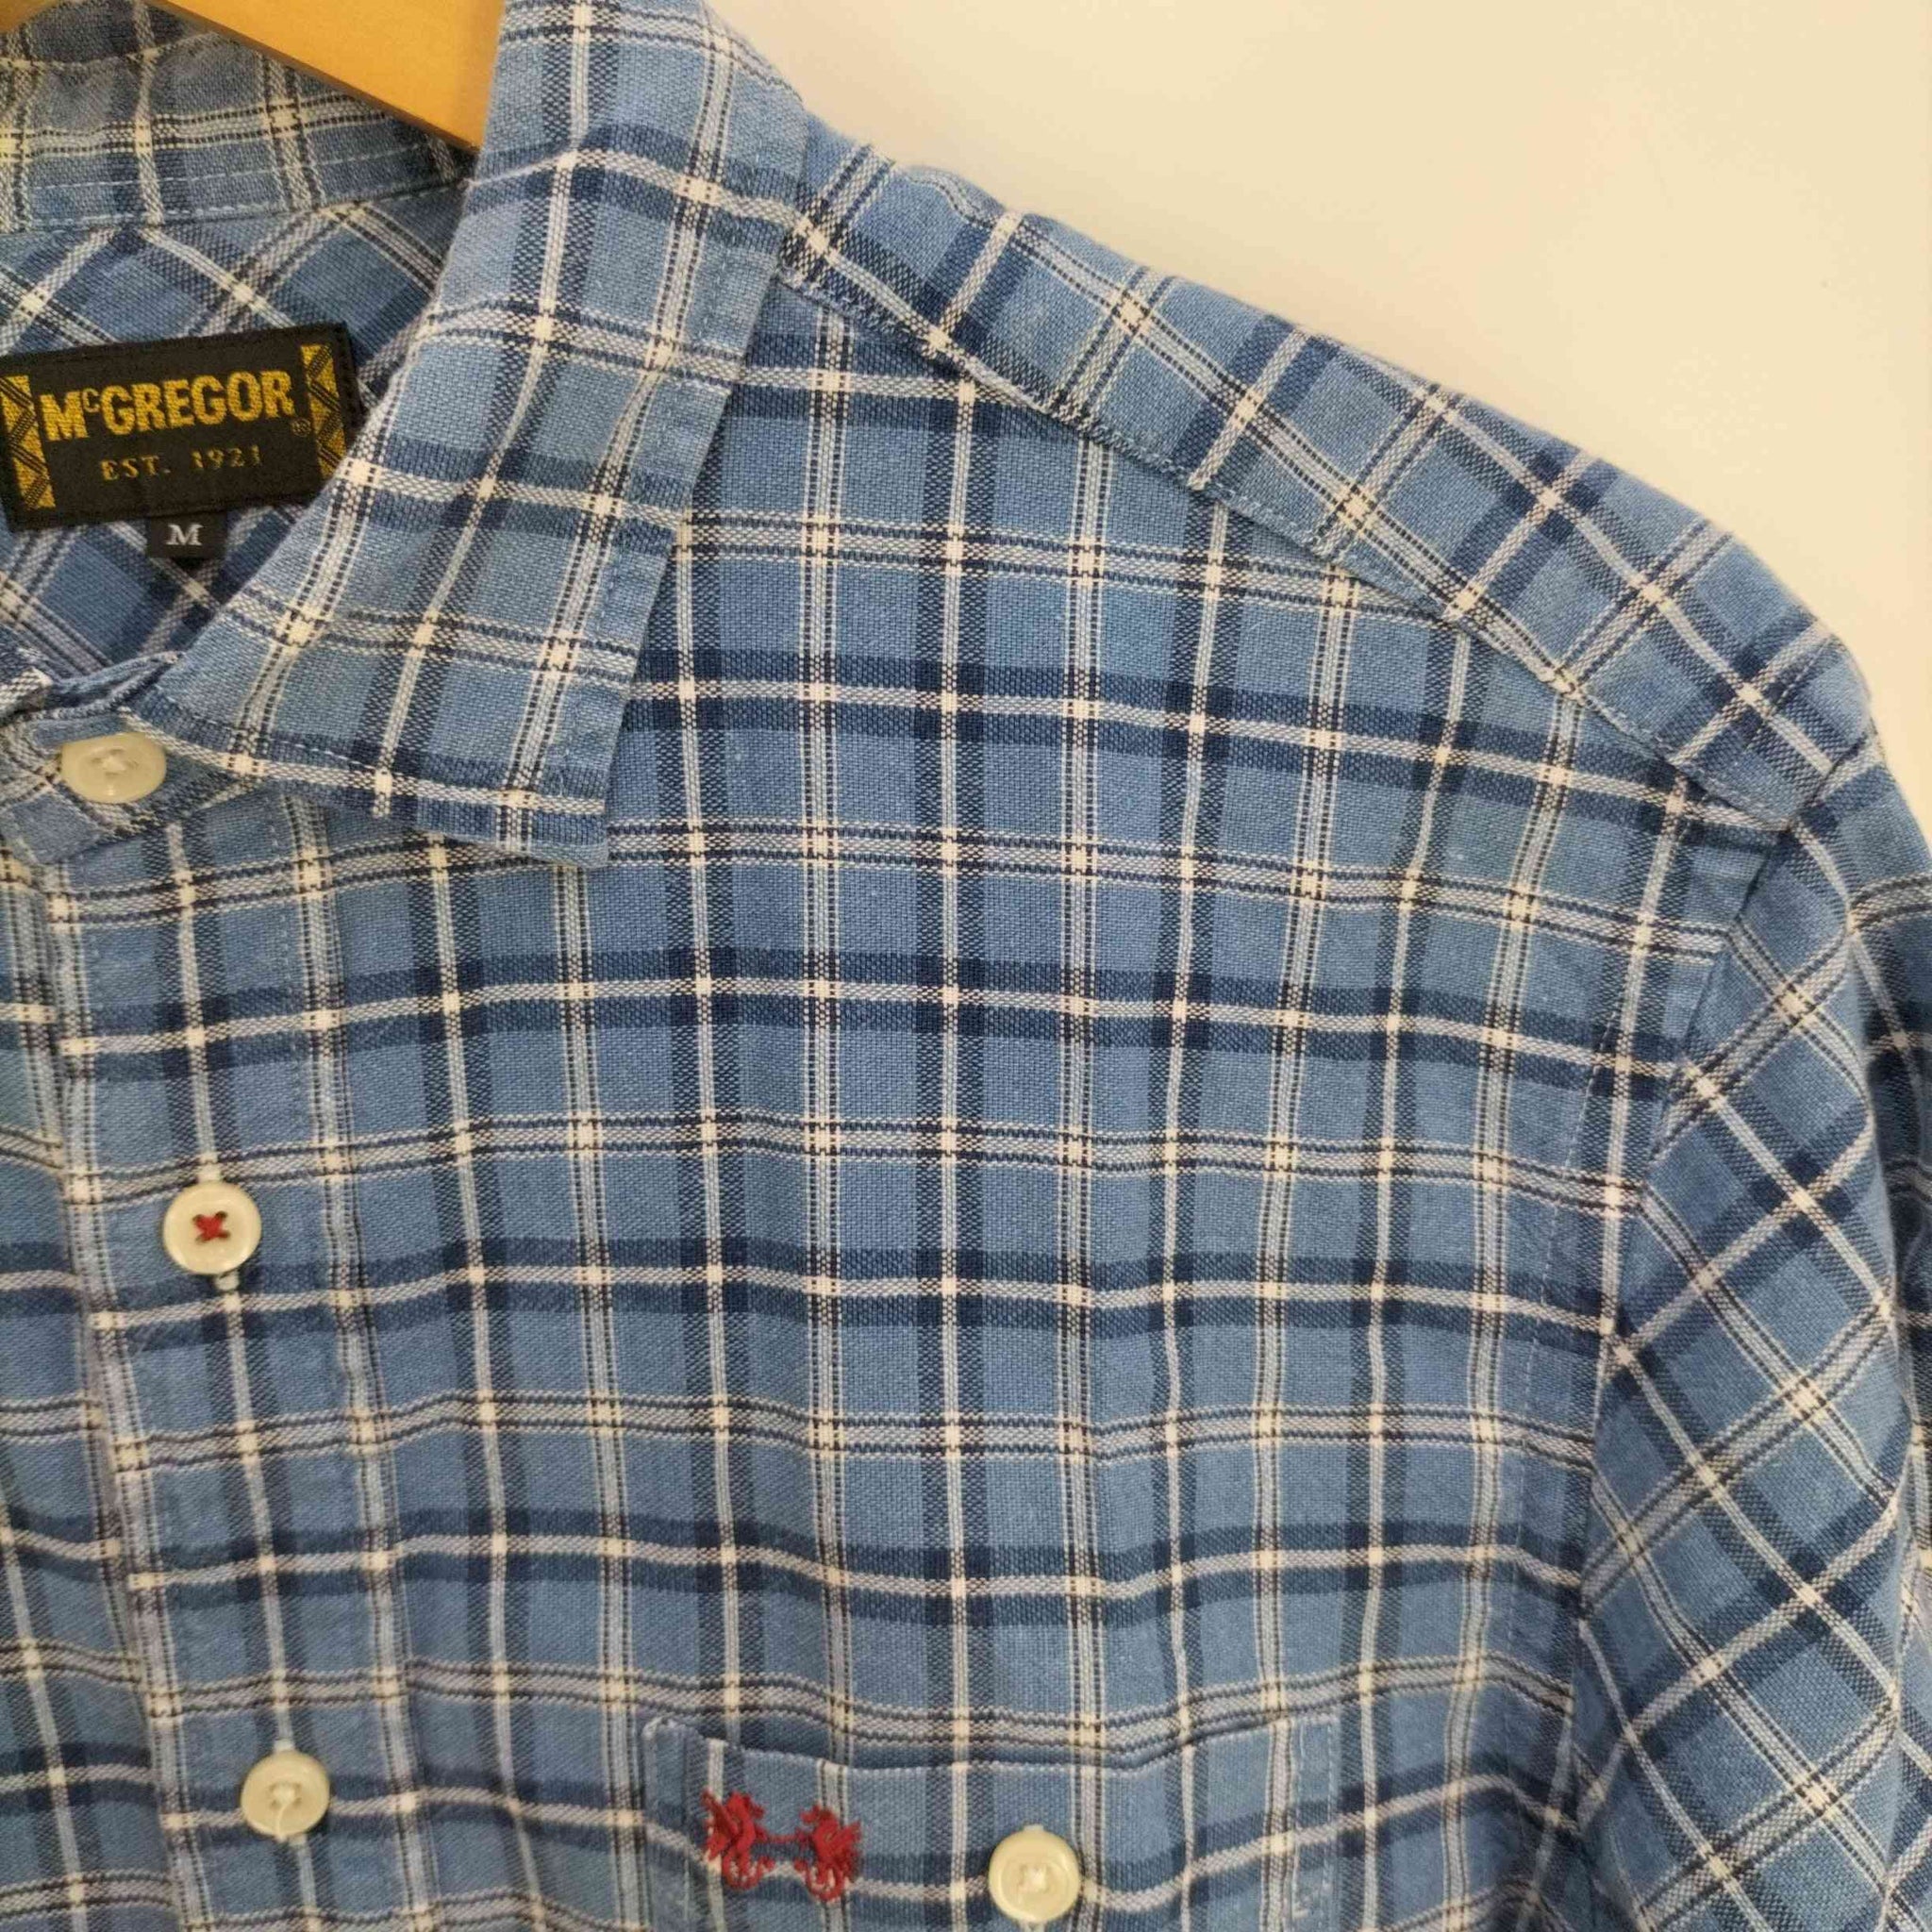 McGREGOR(マックレガー)ロゴ刺繍 タータンチェックシャツ